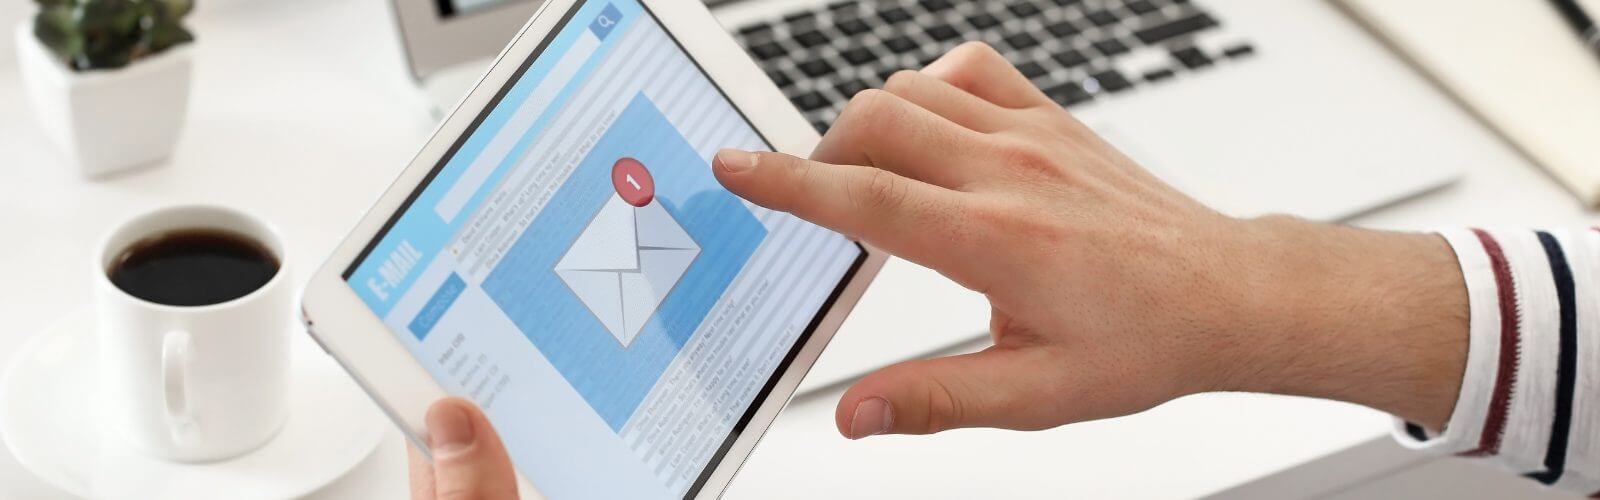 DMARC Bild: Hand tippt ein iPad, das einen Briefumschlag anzeigt.